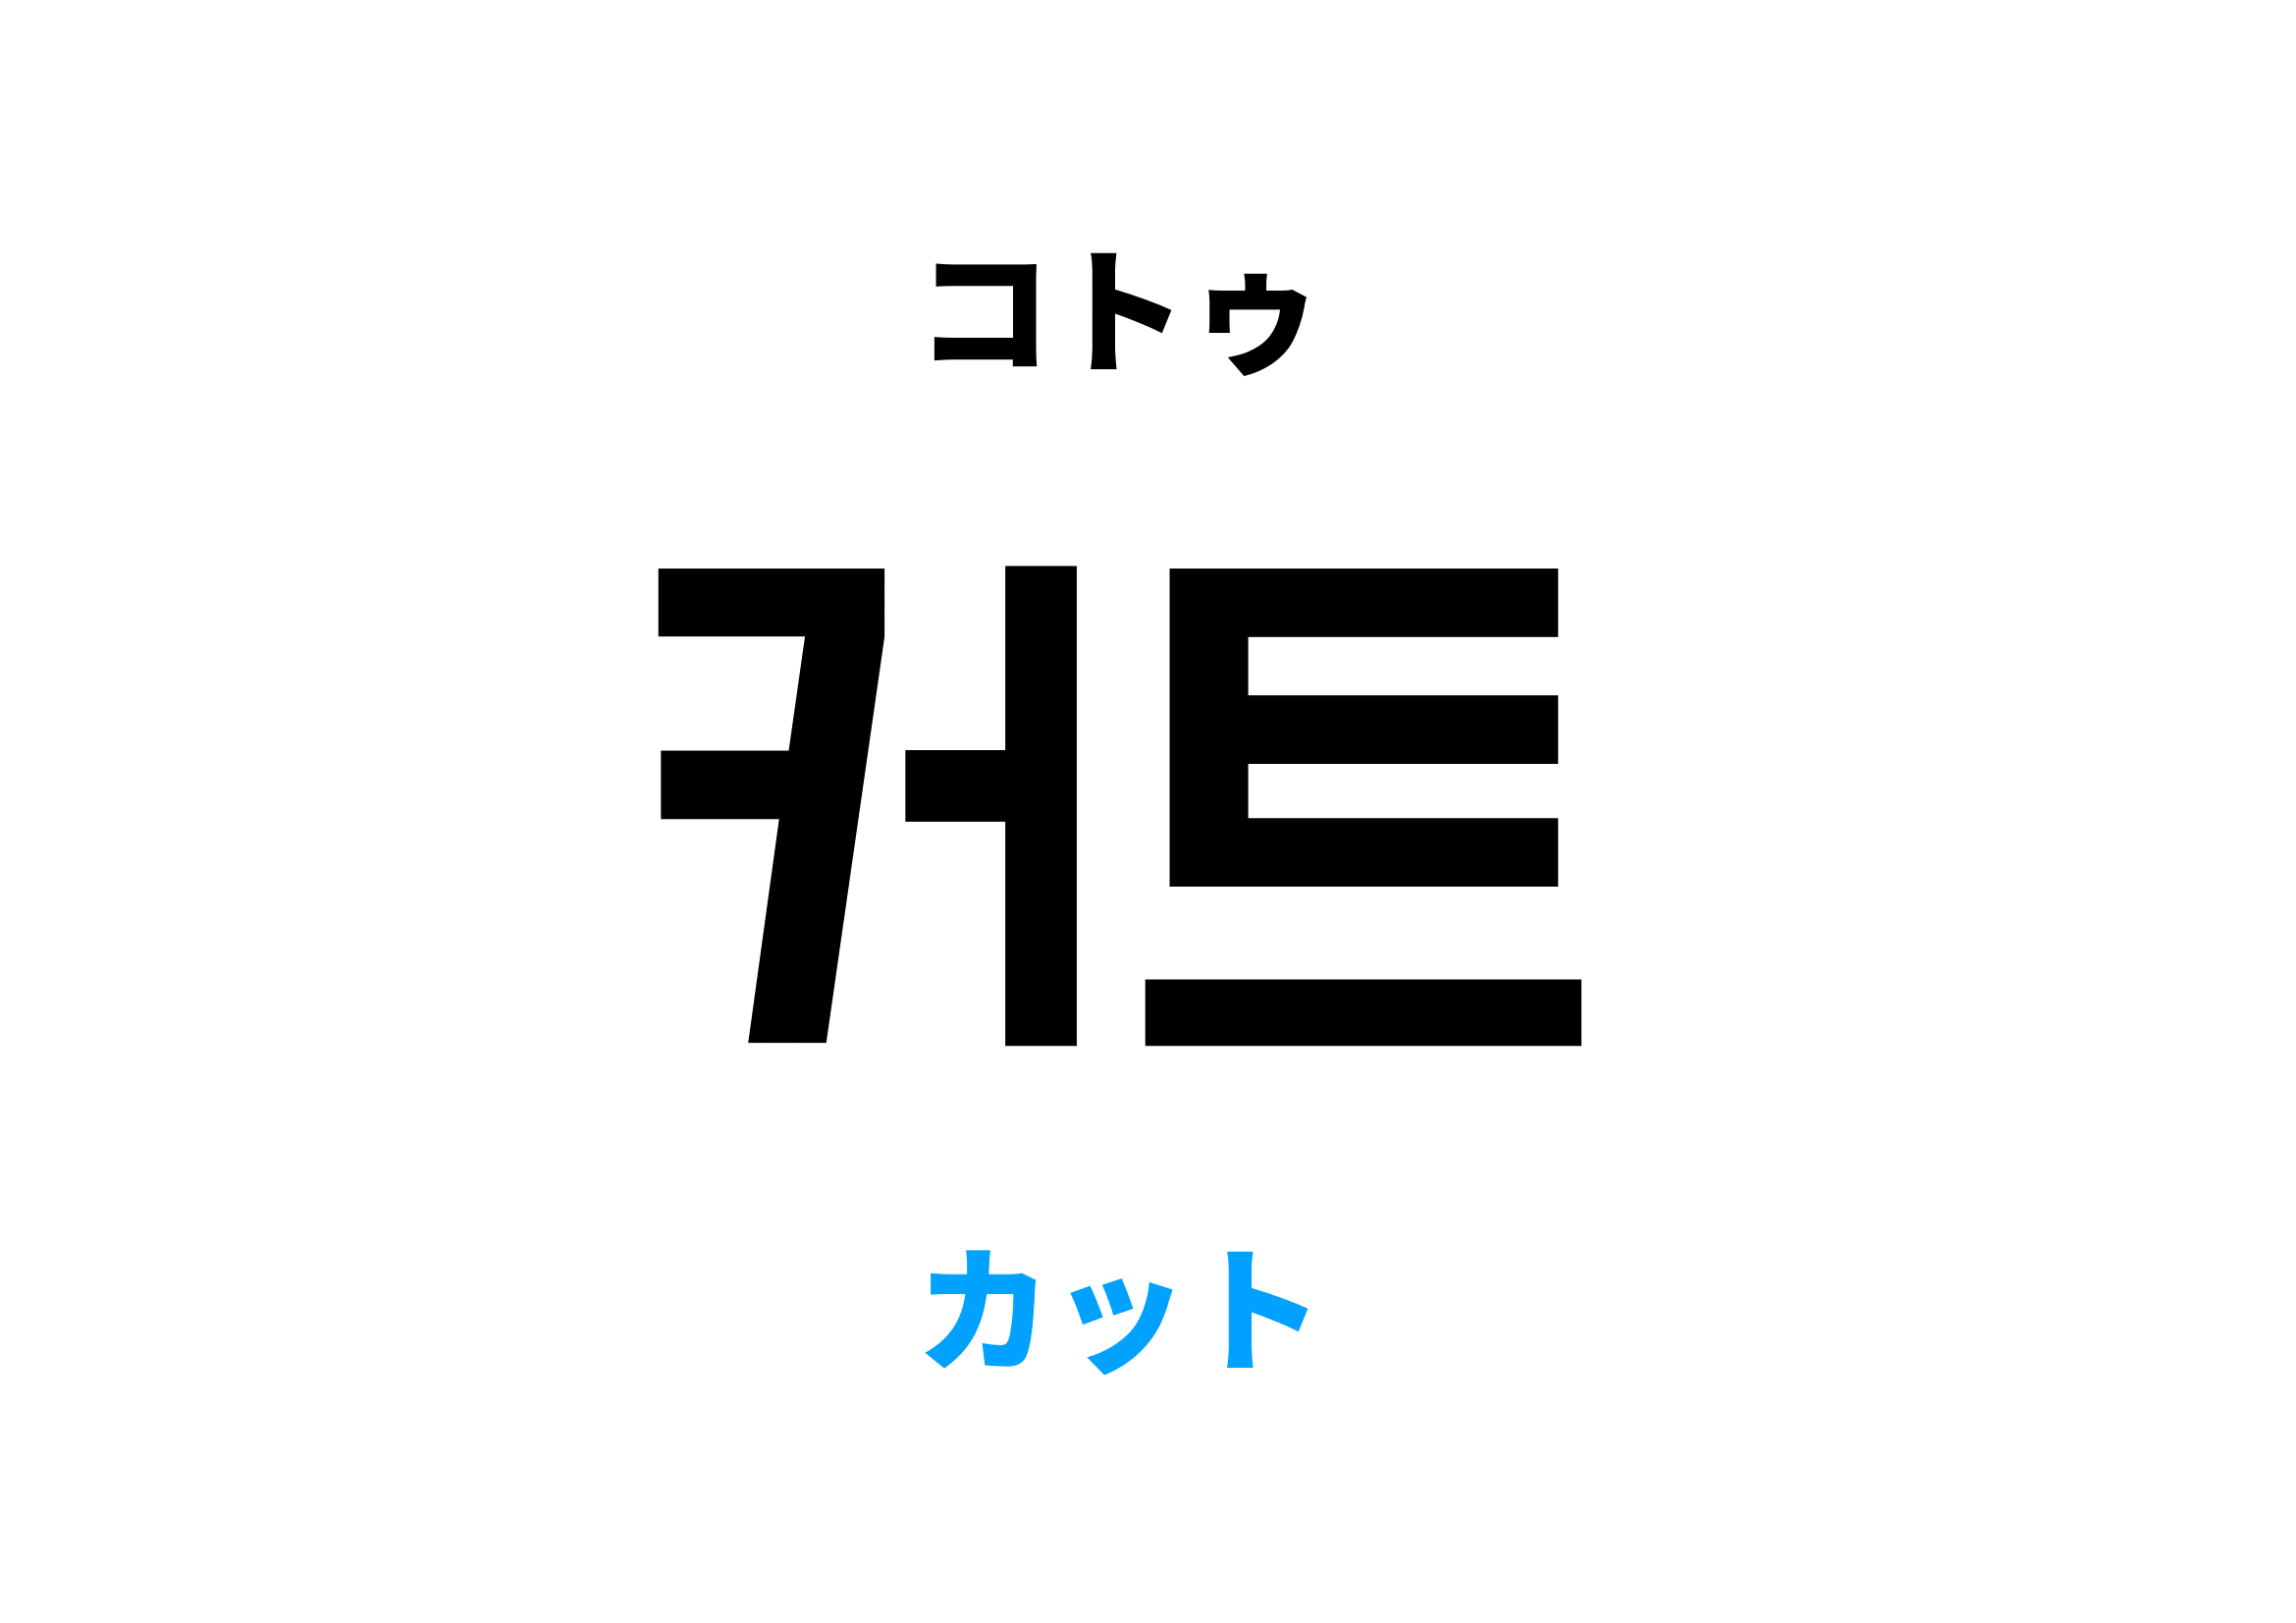 韓国語でカット,커트の意味